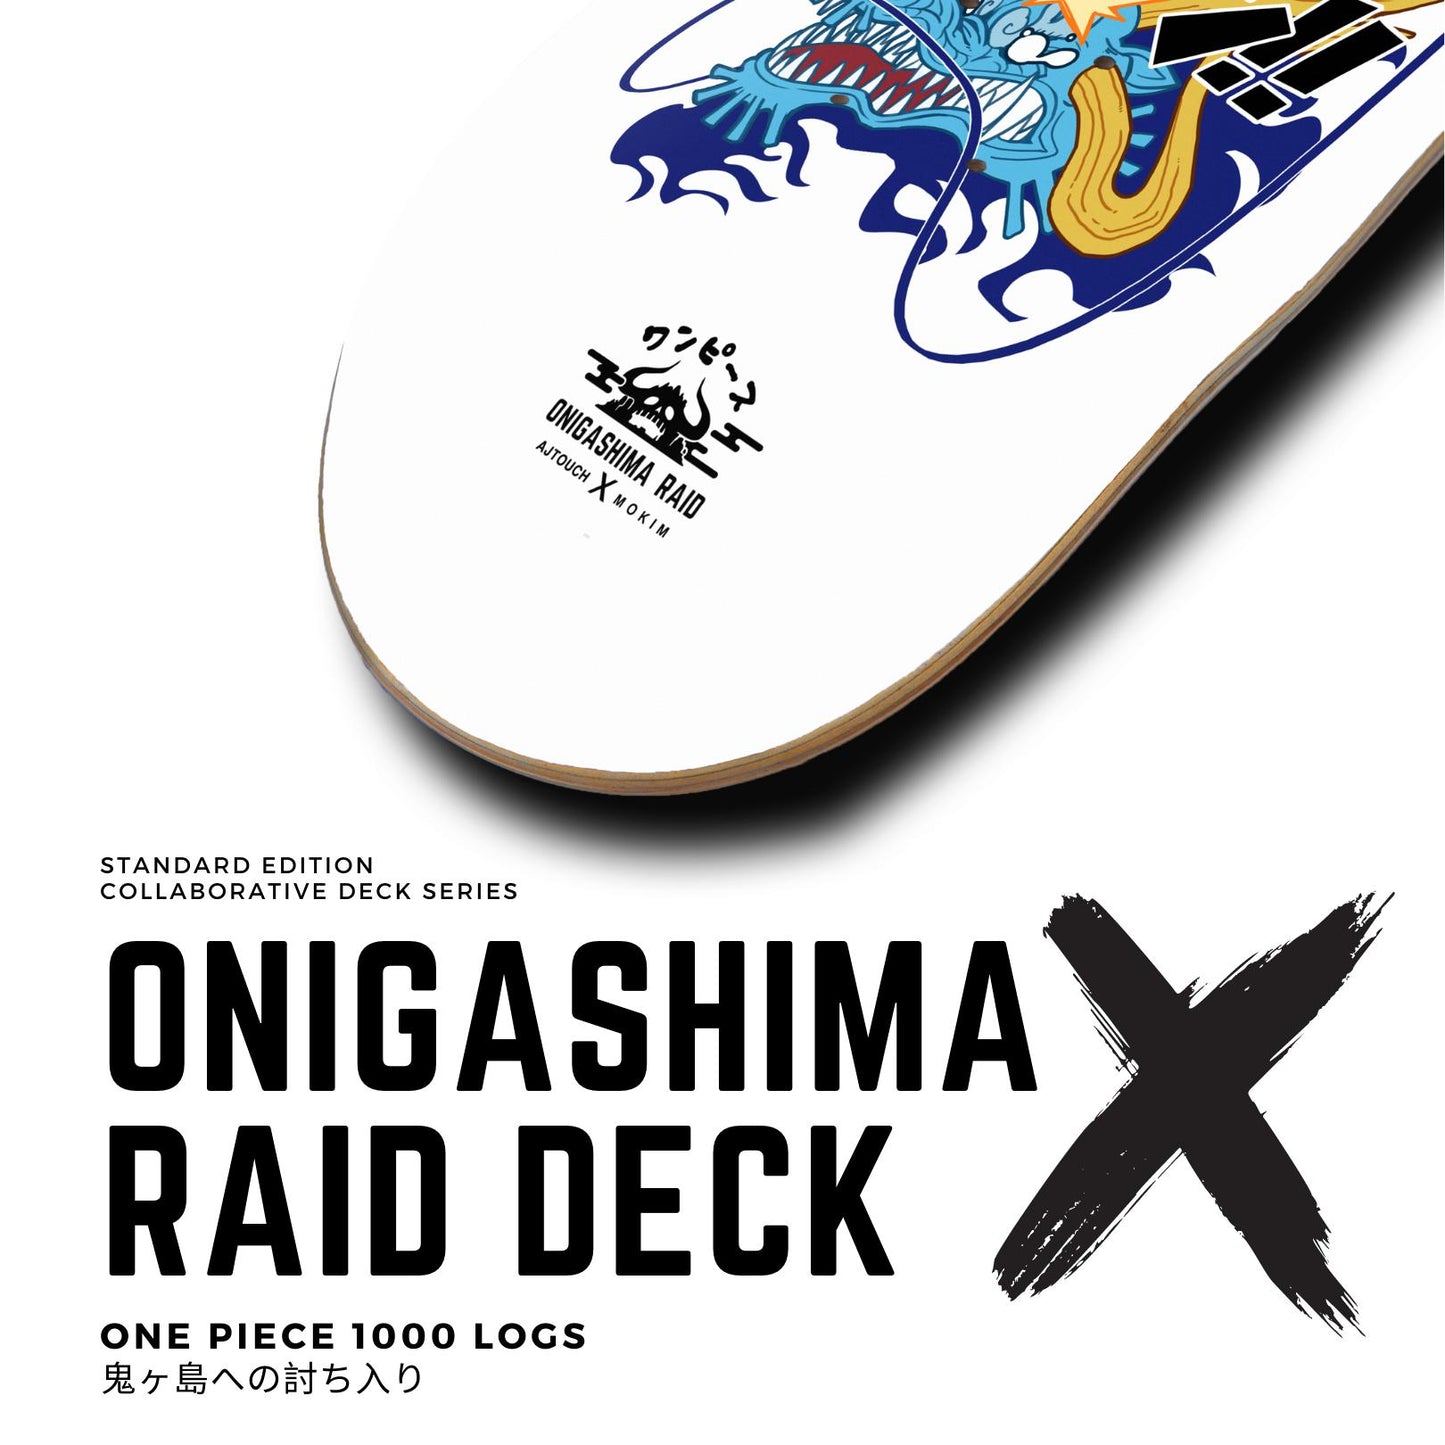 Onigashima Raid Deck, Skate Deck, One Piece, AJTouch